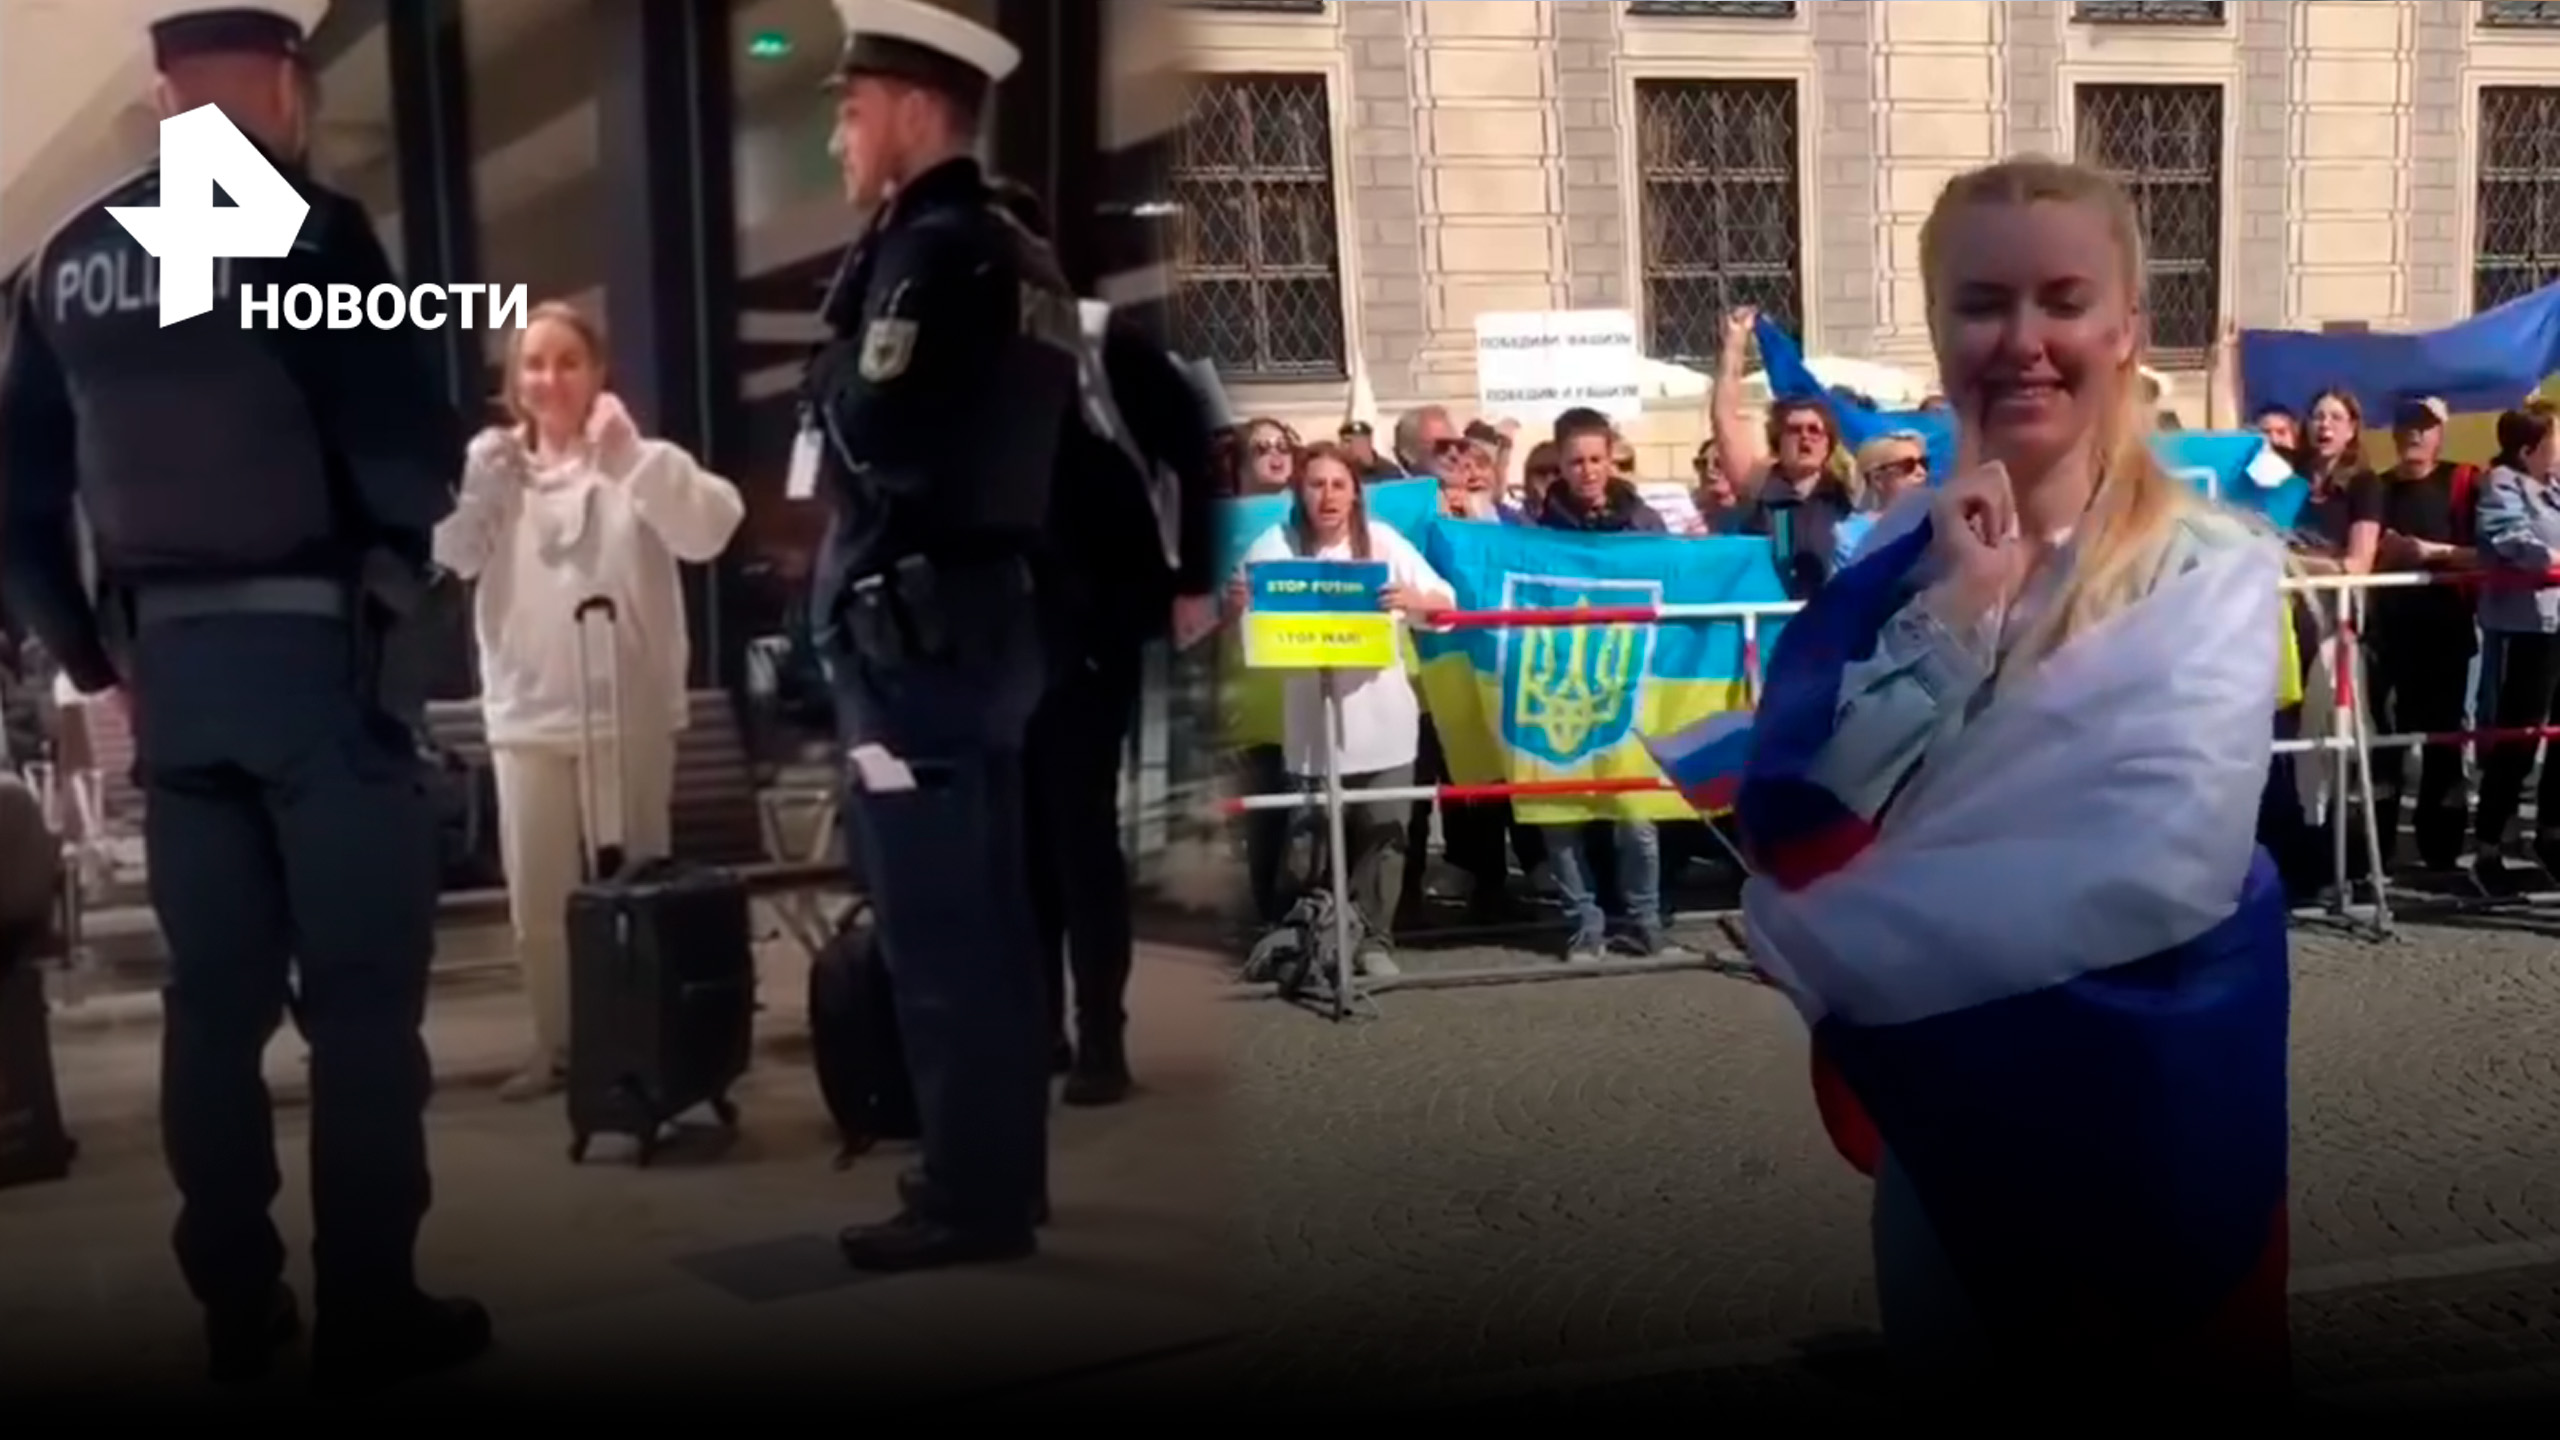 Россиянку Юлию Прохорову депортировали - она станцевала с флагом РФ перед митингом украинцев / РЕН